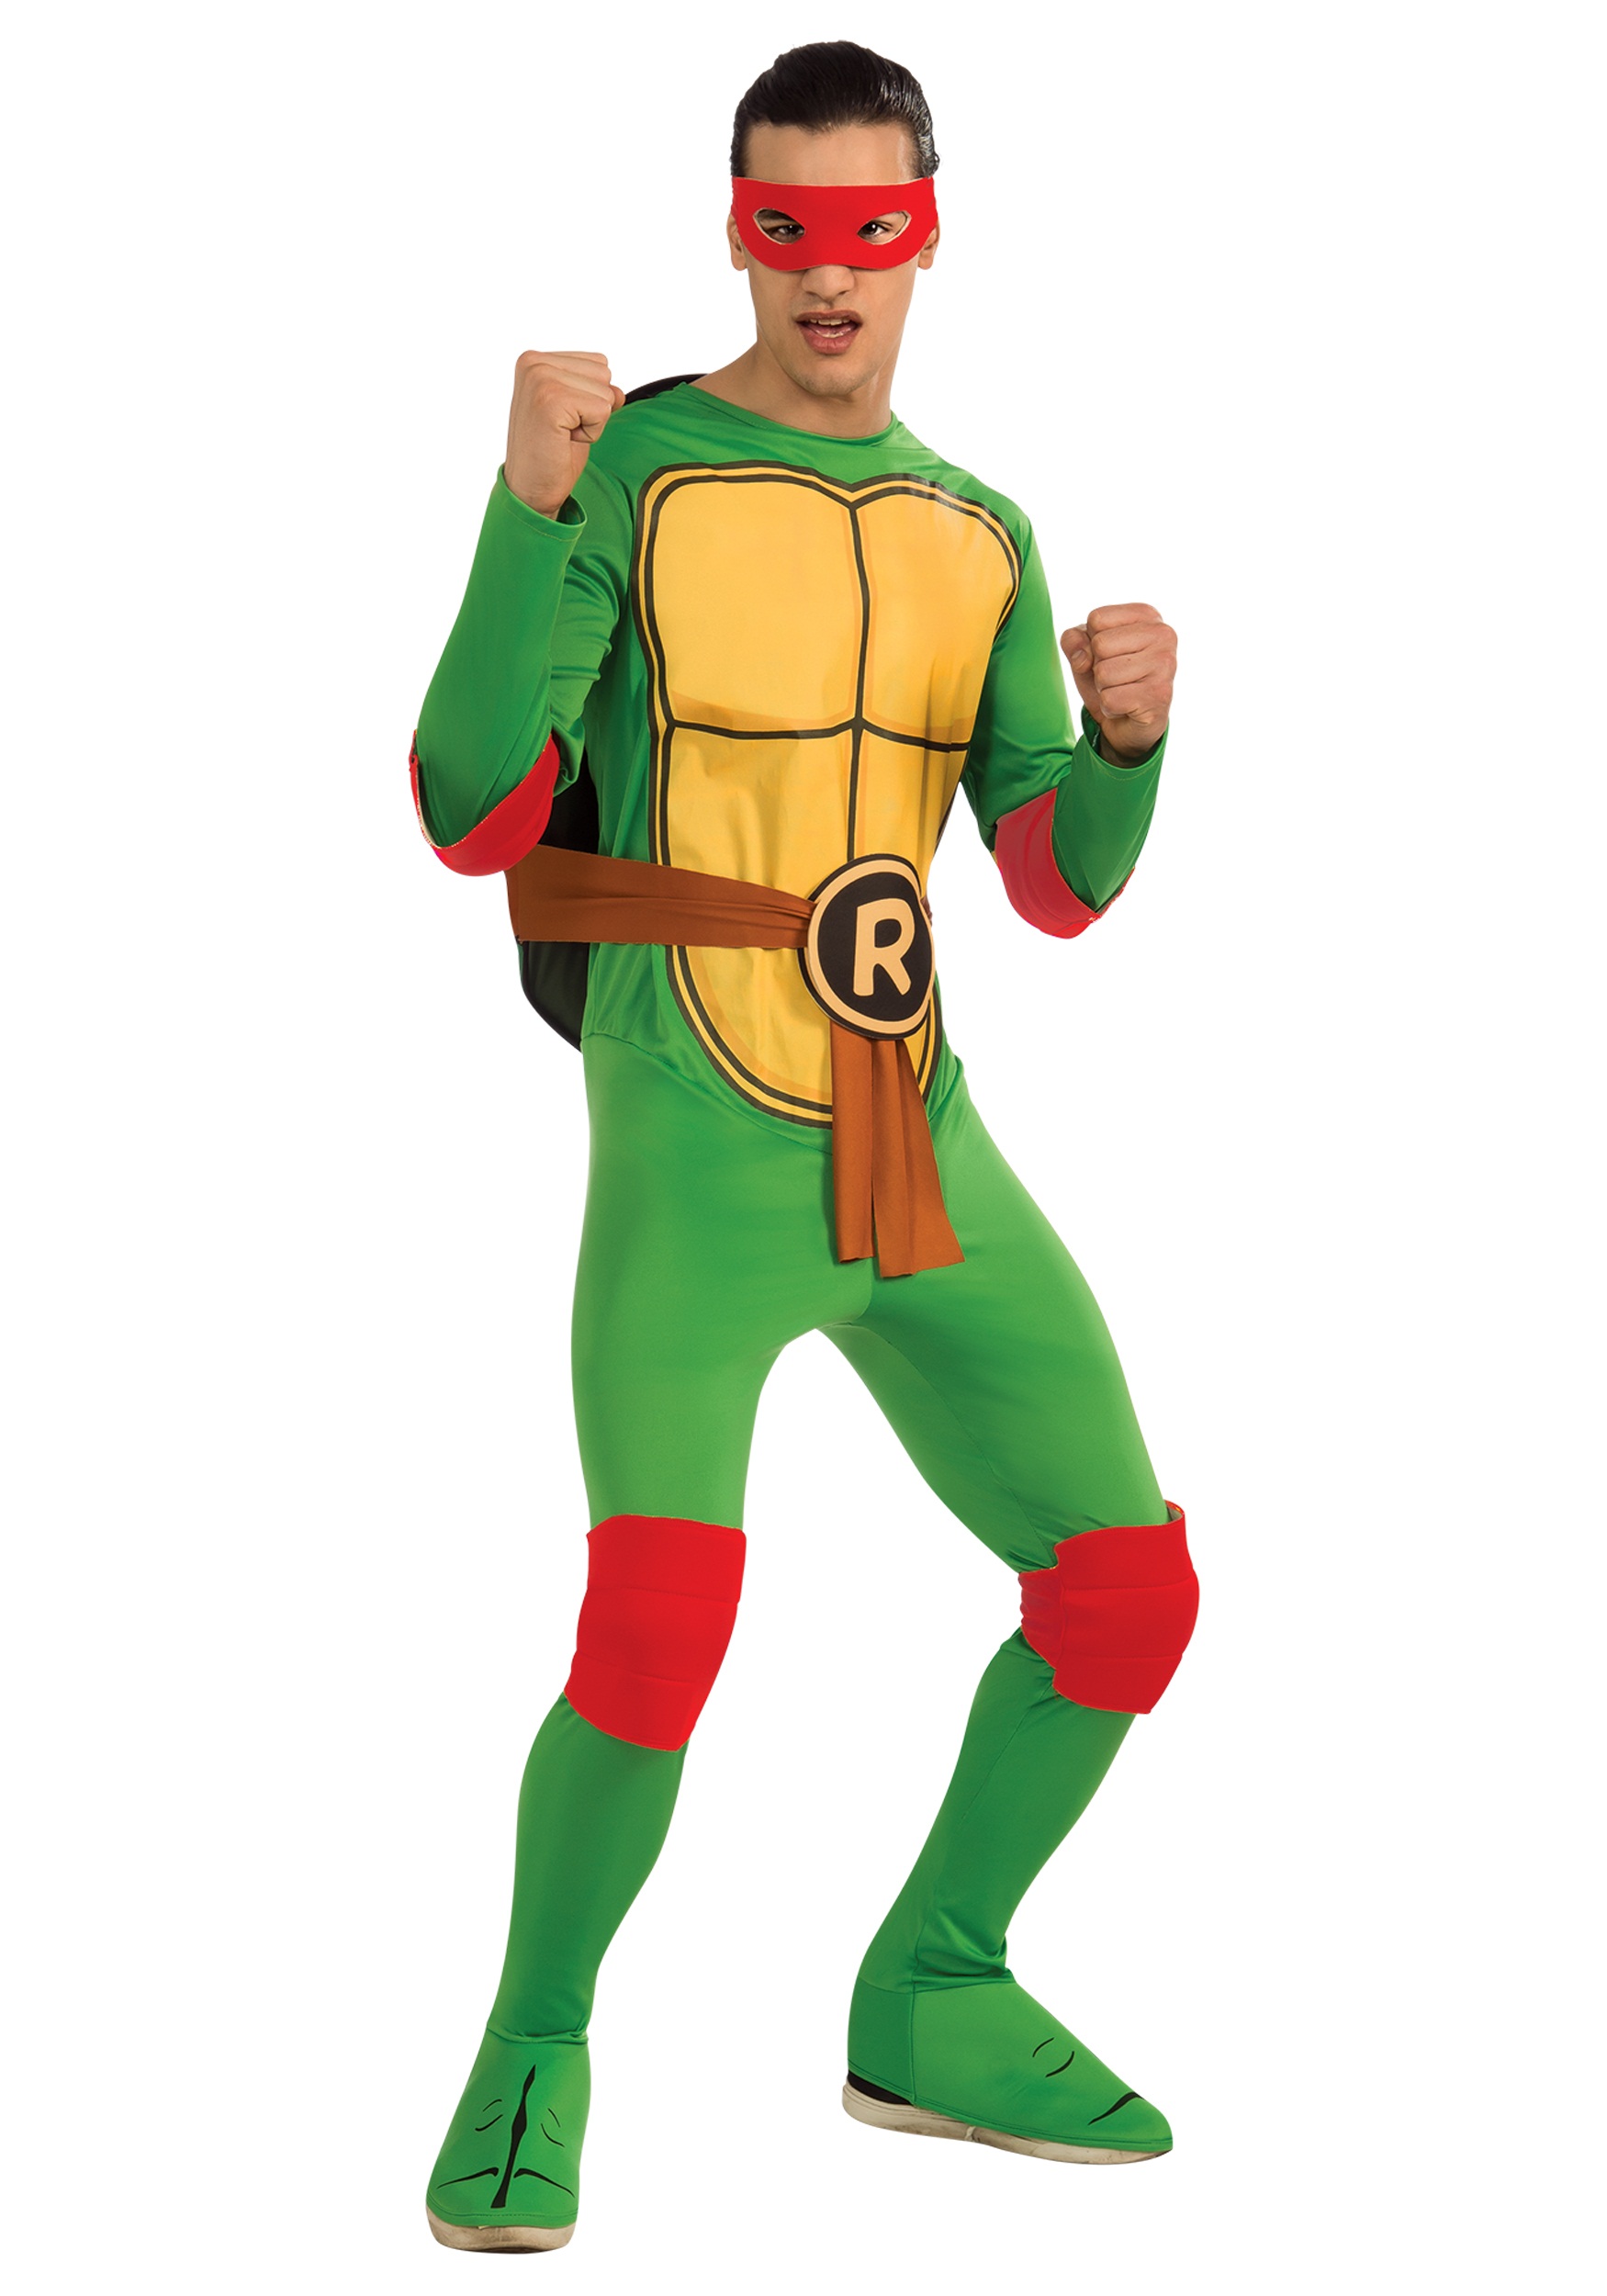 TMNT Teenage Mutant Ninja Turtles Adult Halloween Costume Jumpsuit Pajamas  Cosplay